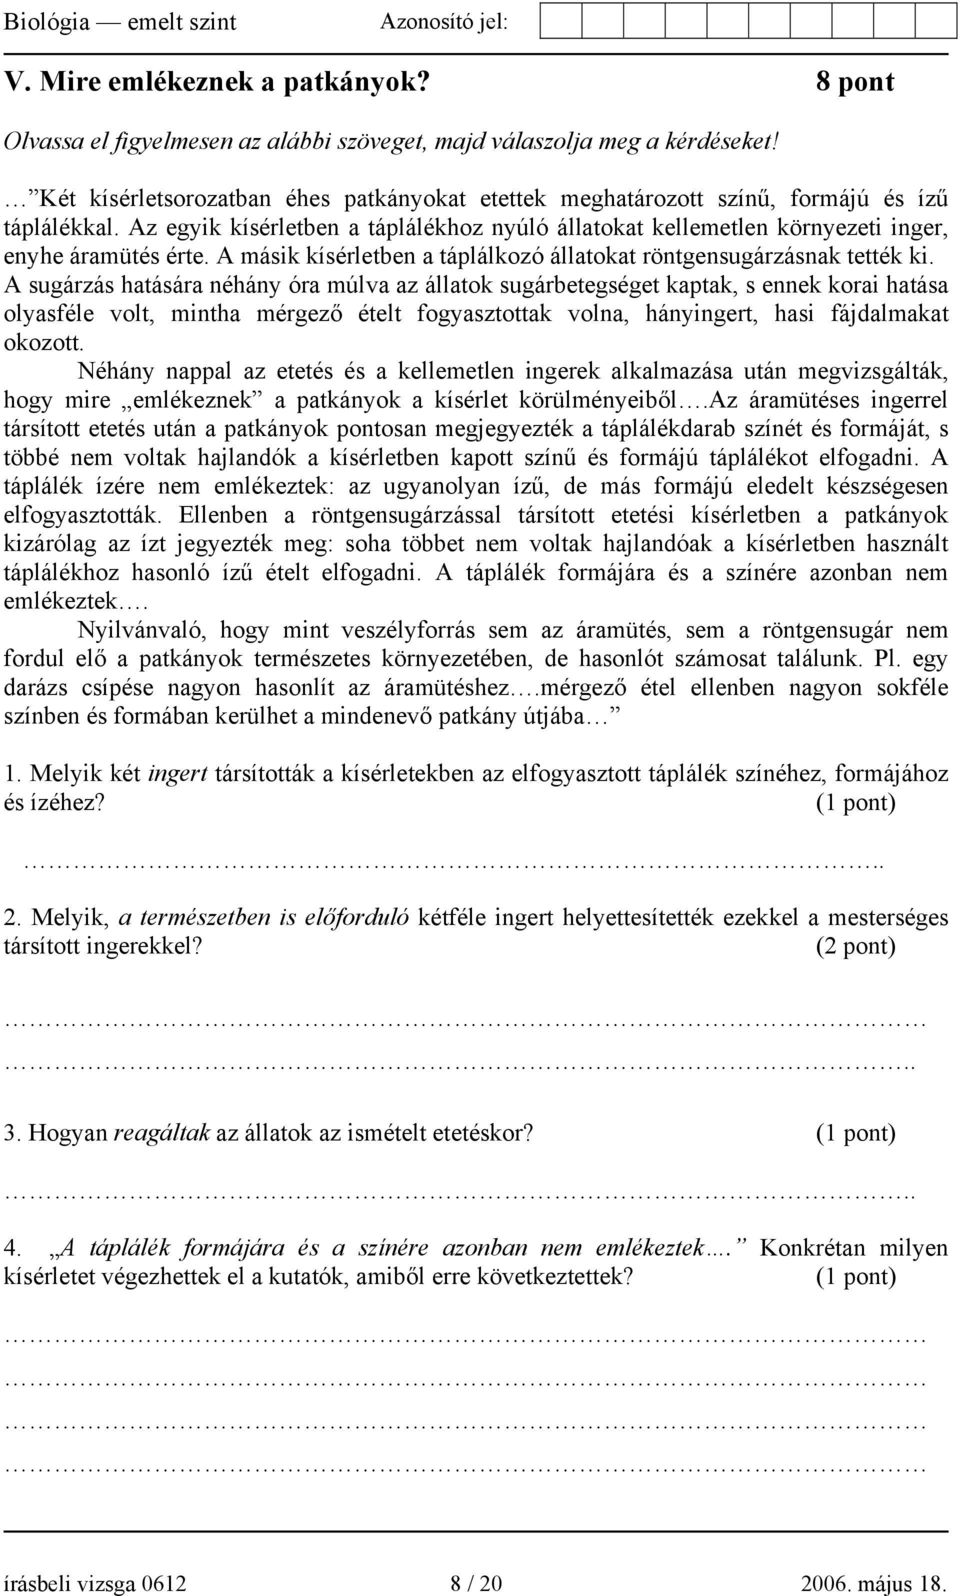 EMELT SZINTŰ ÍRÁSBELI VIZSGA - PDF Ingyenes letöltés